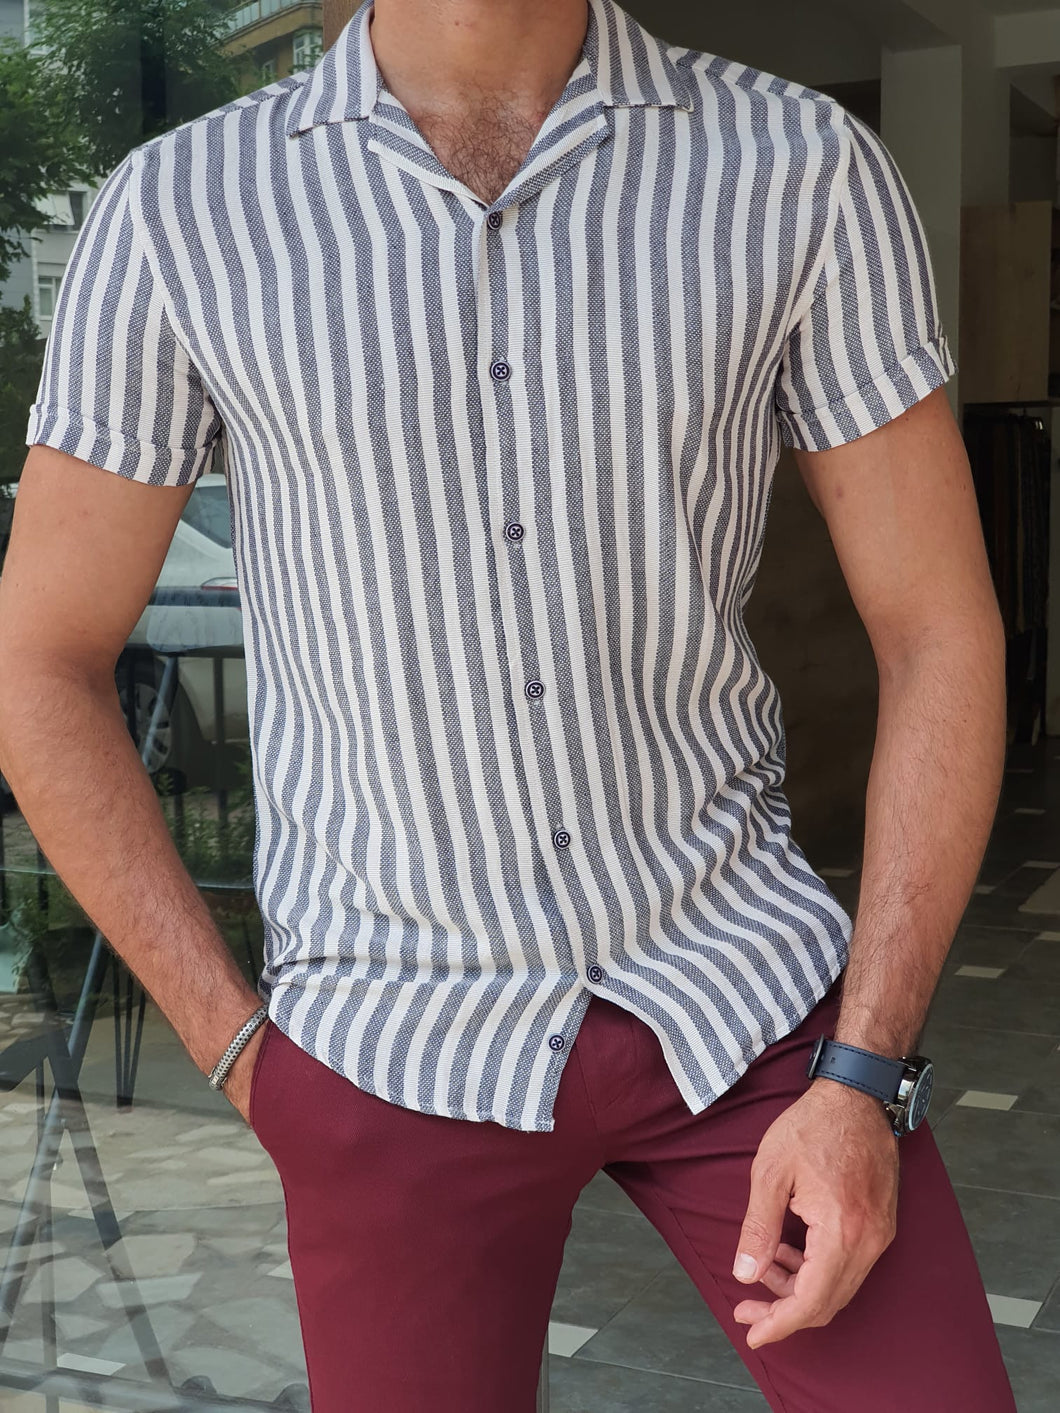 Chase Slim Fit Striped Short Sleeve Ecru & Navy Shirt